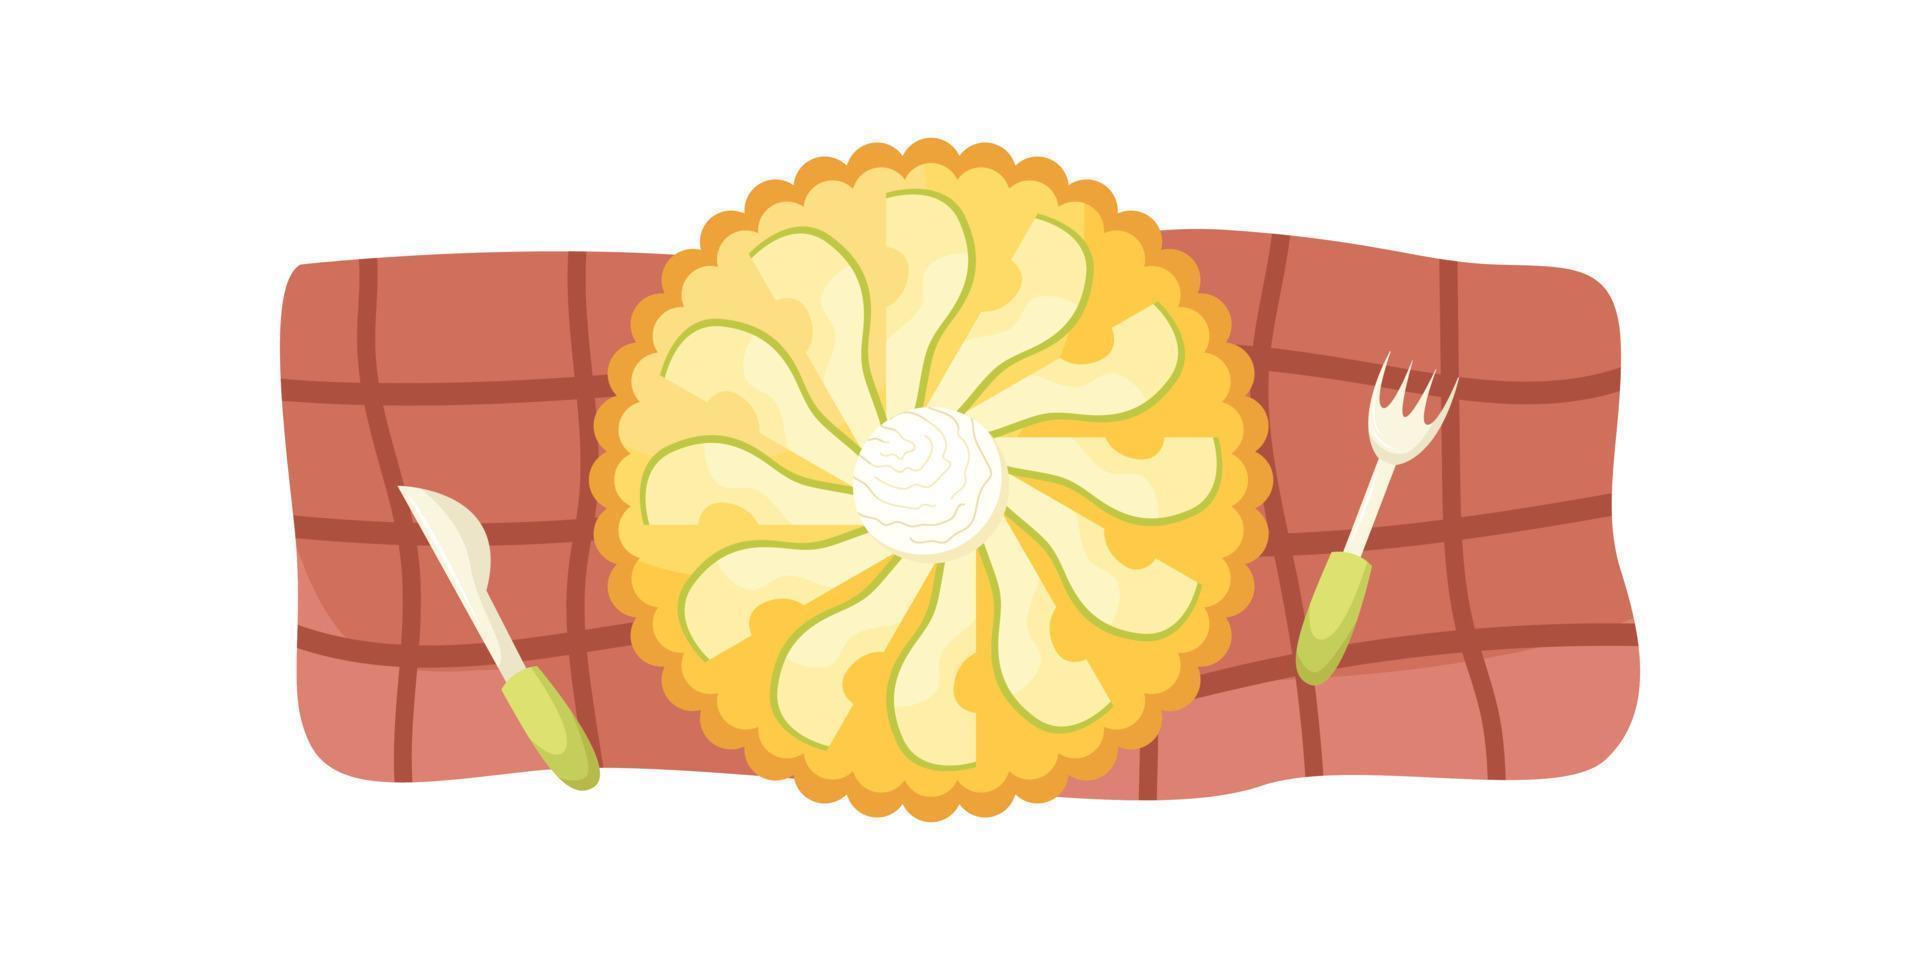 ilustração em vetor de uma torta de pêra com uma bola de sorvete em uma toalha de mesa vermelha. postura plana